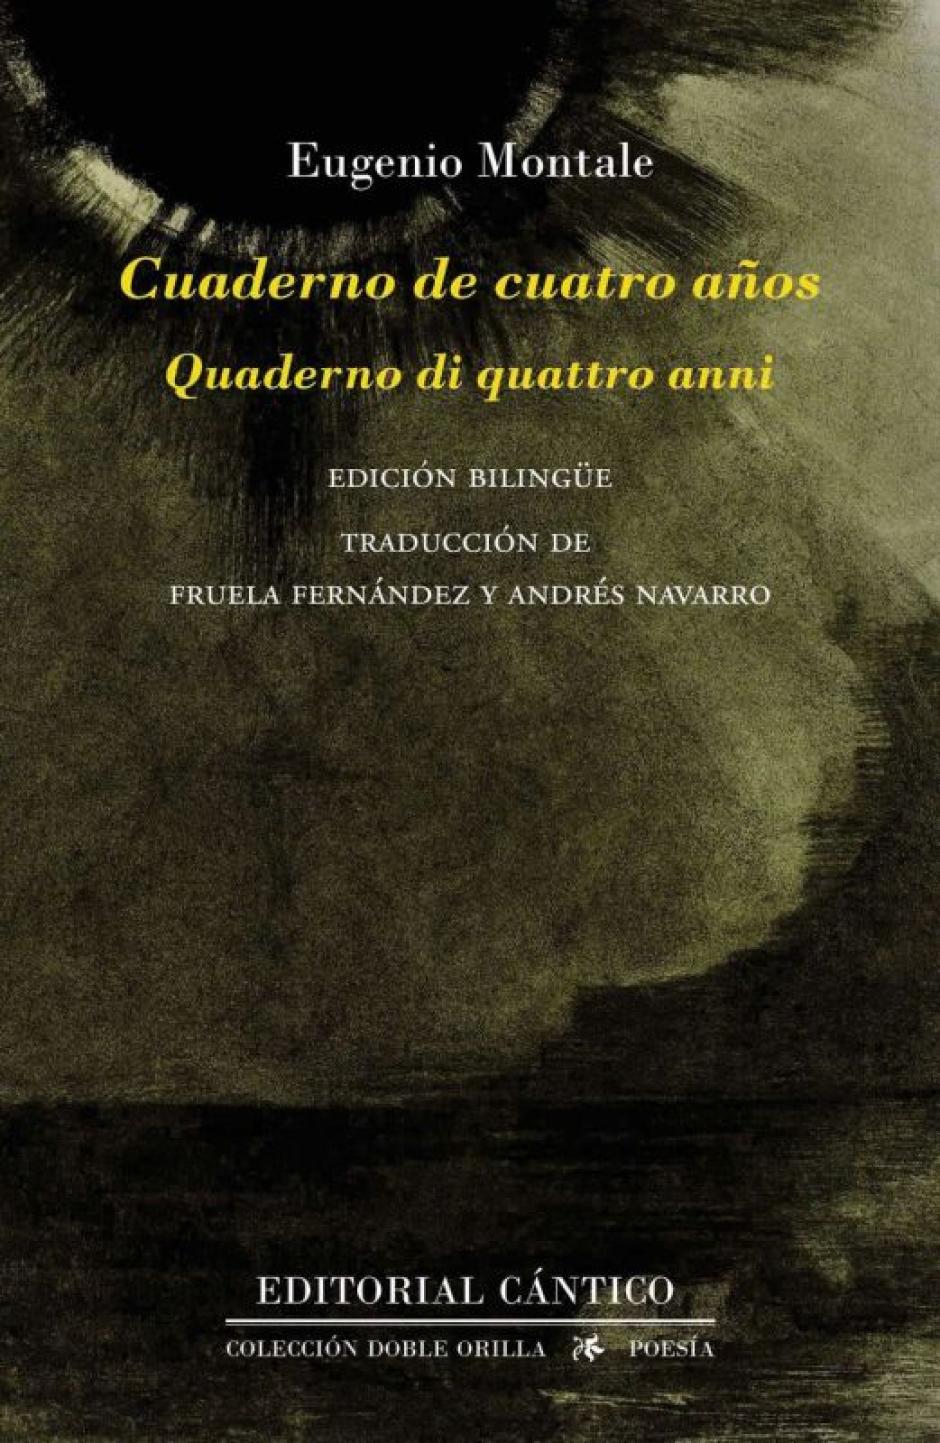 'Cuaderno de cuatro años', libro de Eugenio Montale